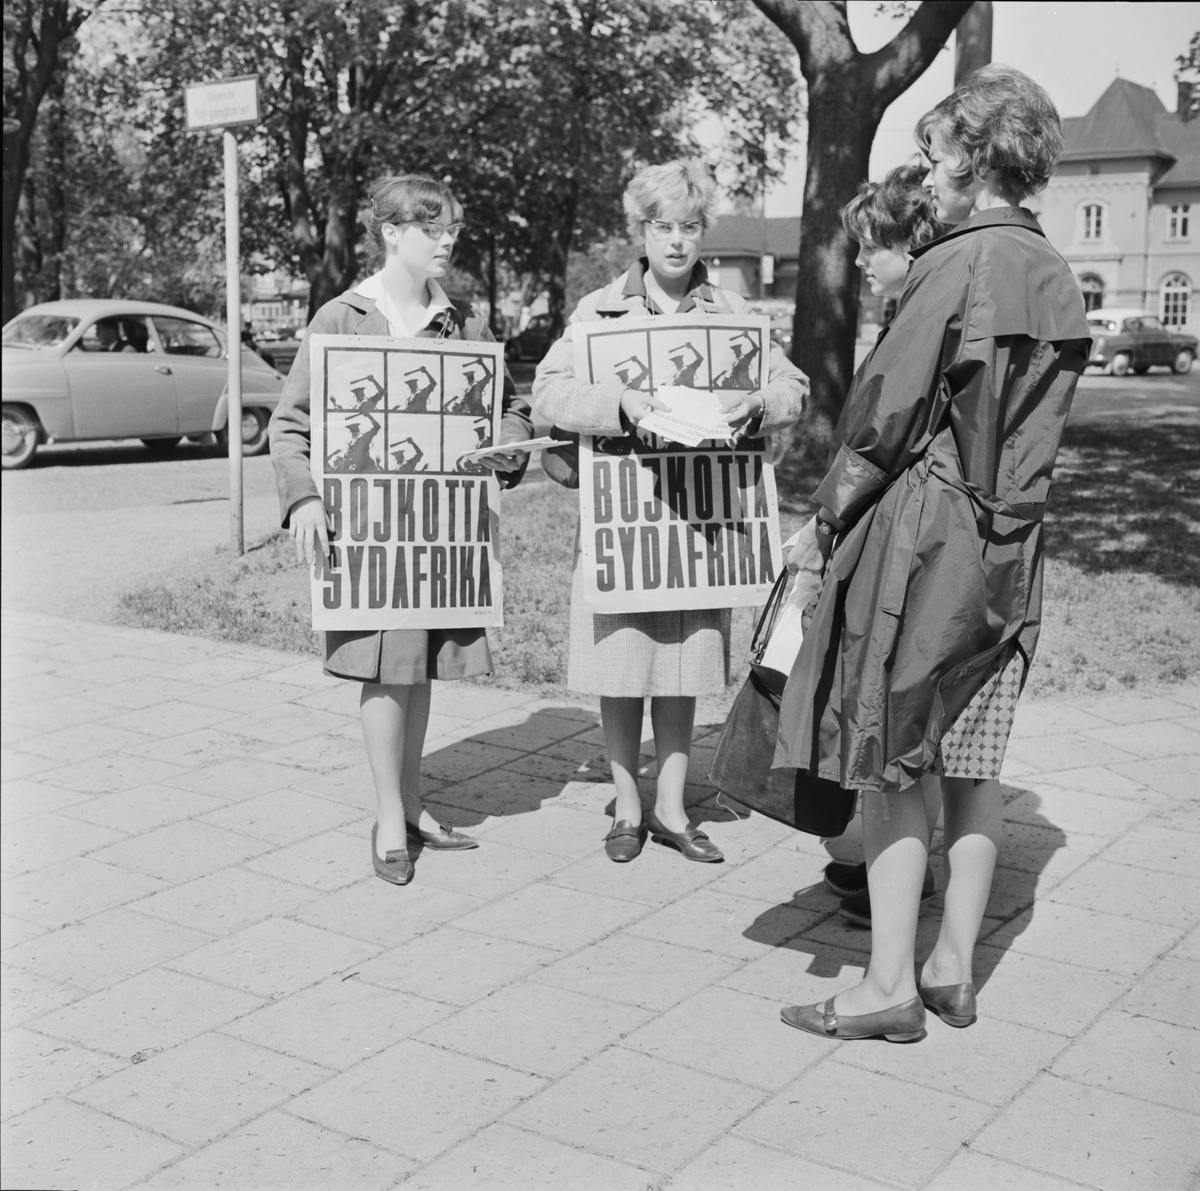 Sydafrika-bojkotten - studentdemonstration, Uppsala 1963